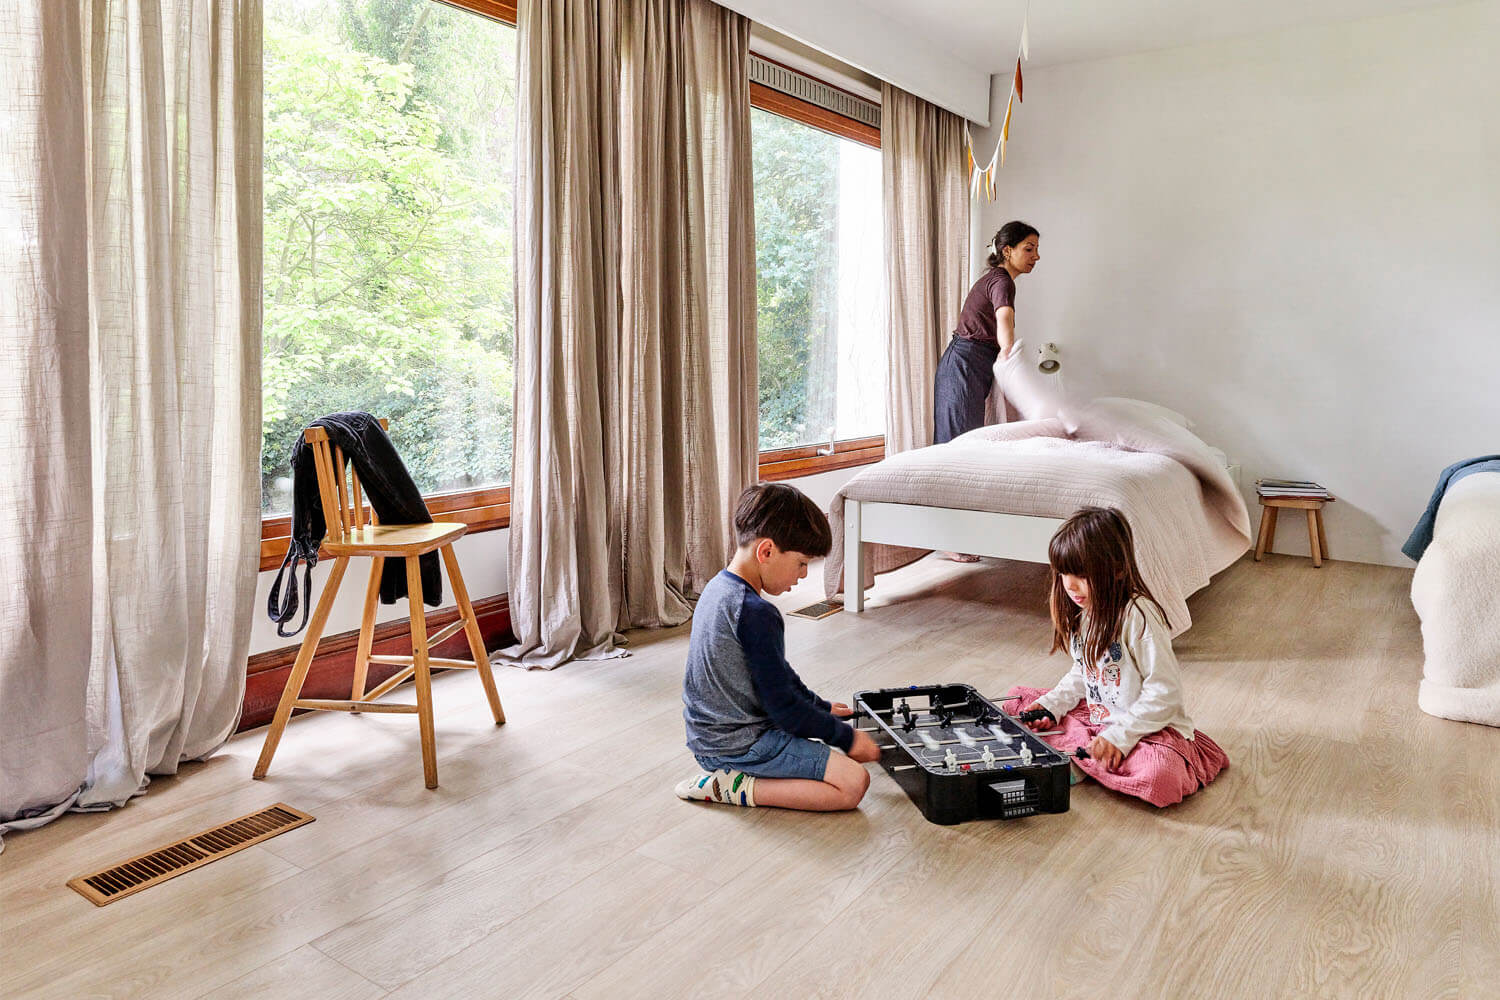 Сумейя застилает кровать в детской спальне, пока дети играют на полу. Этот роскошный виниловый пол с тиснением в регистр Moduleo LayRed Laurel Oak 51230.